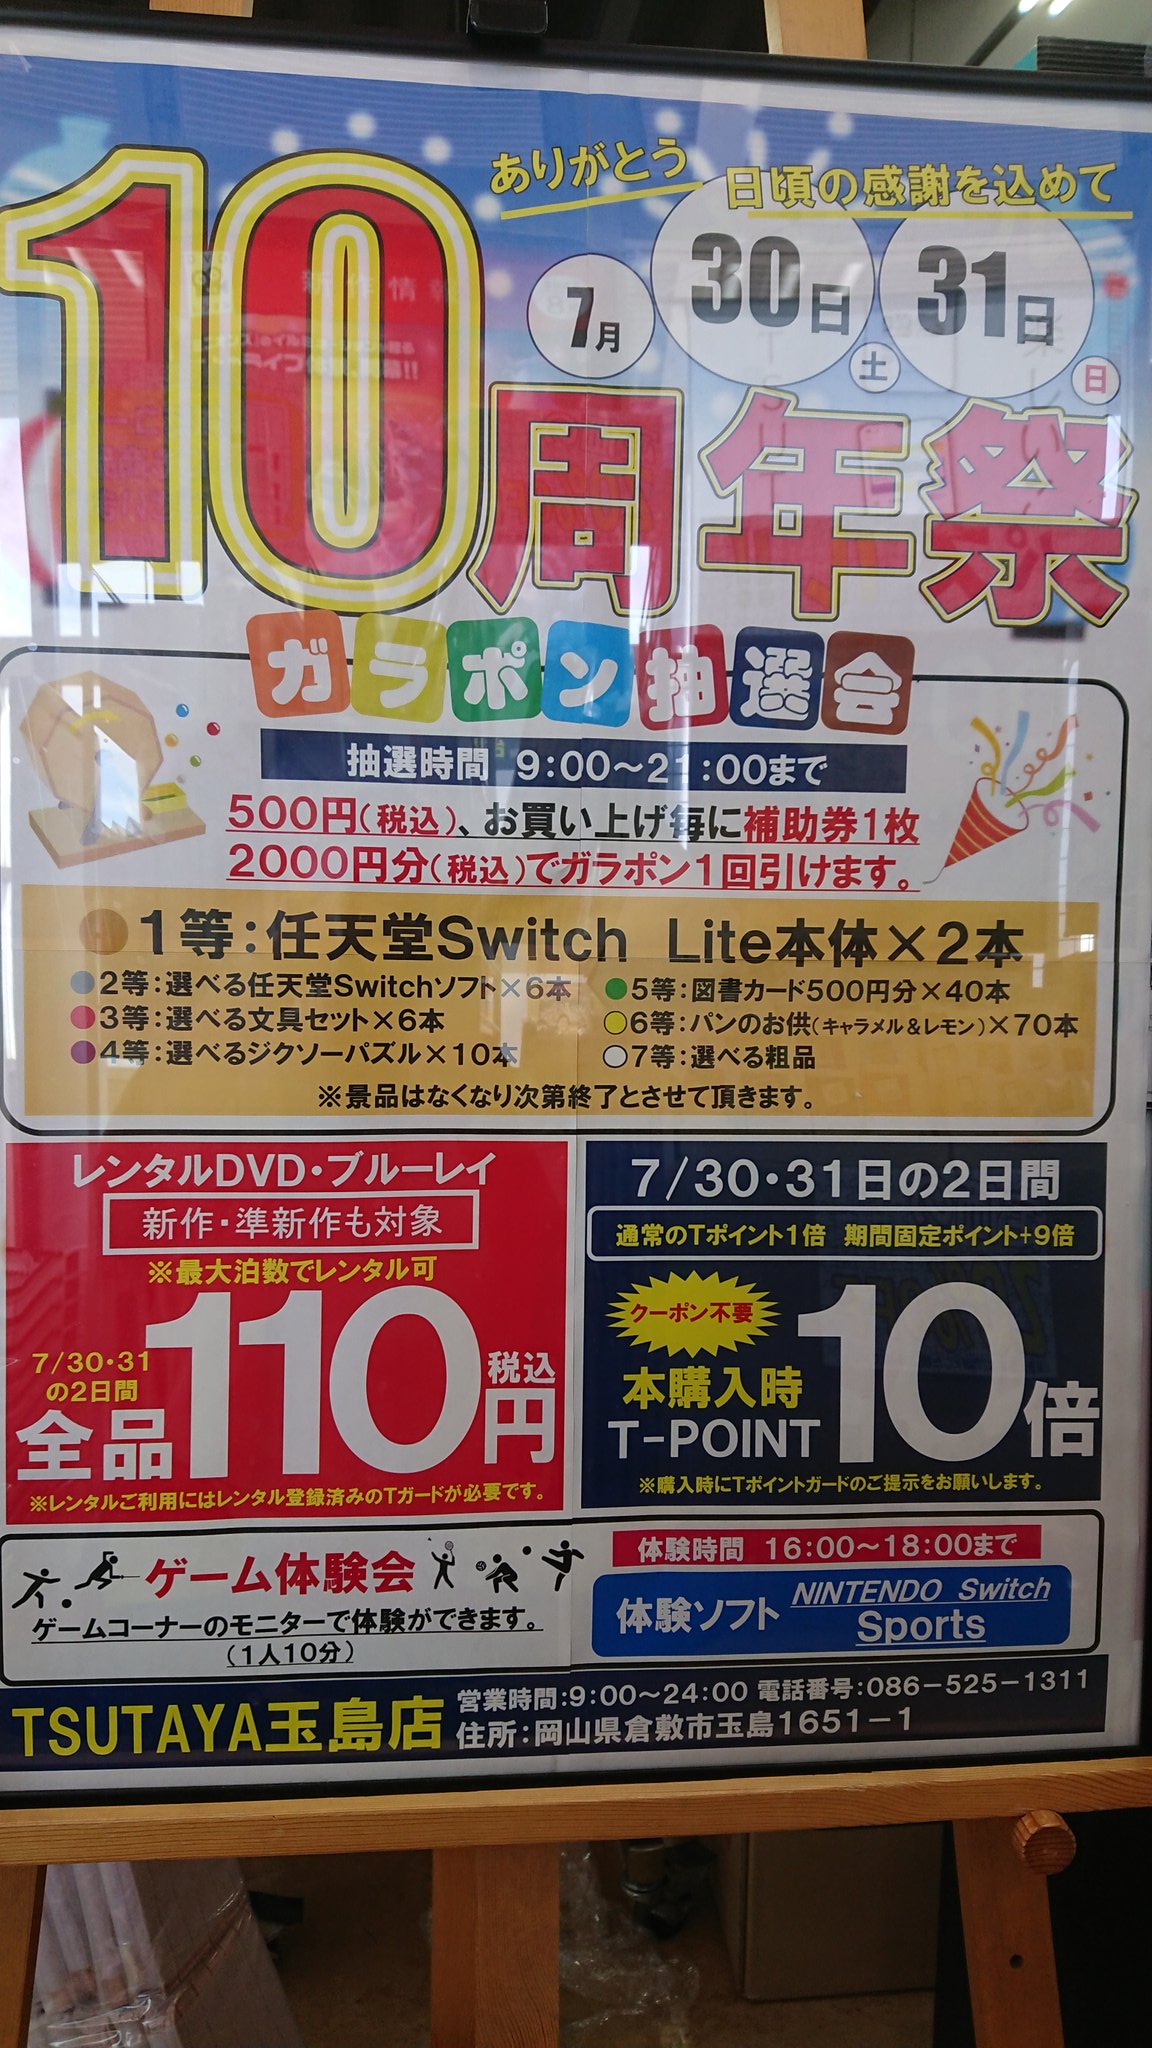 Tsutaya玉島店 Tsutayat2 Twitter